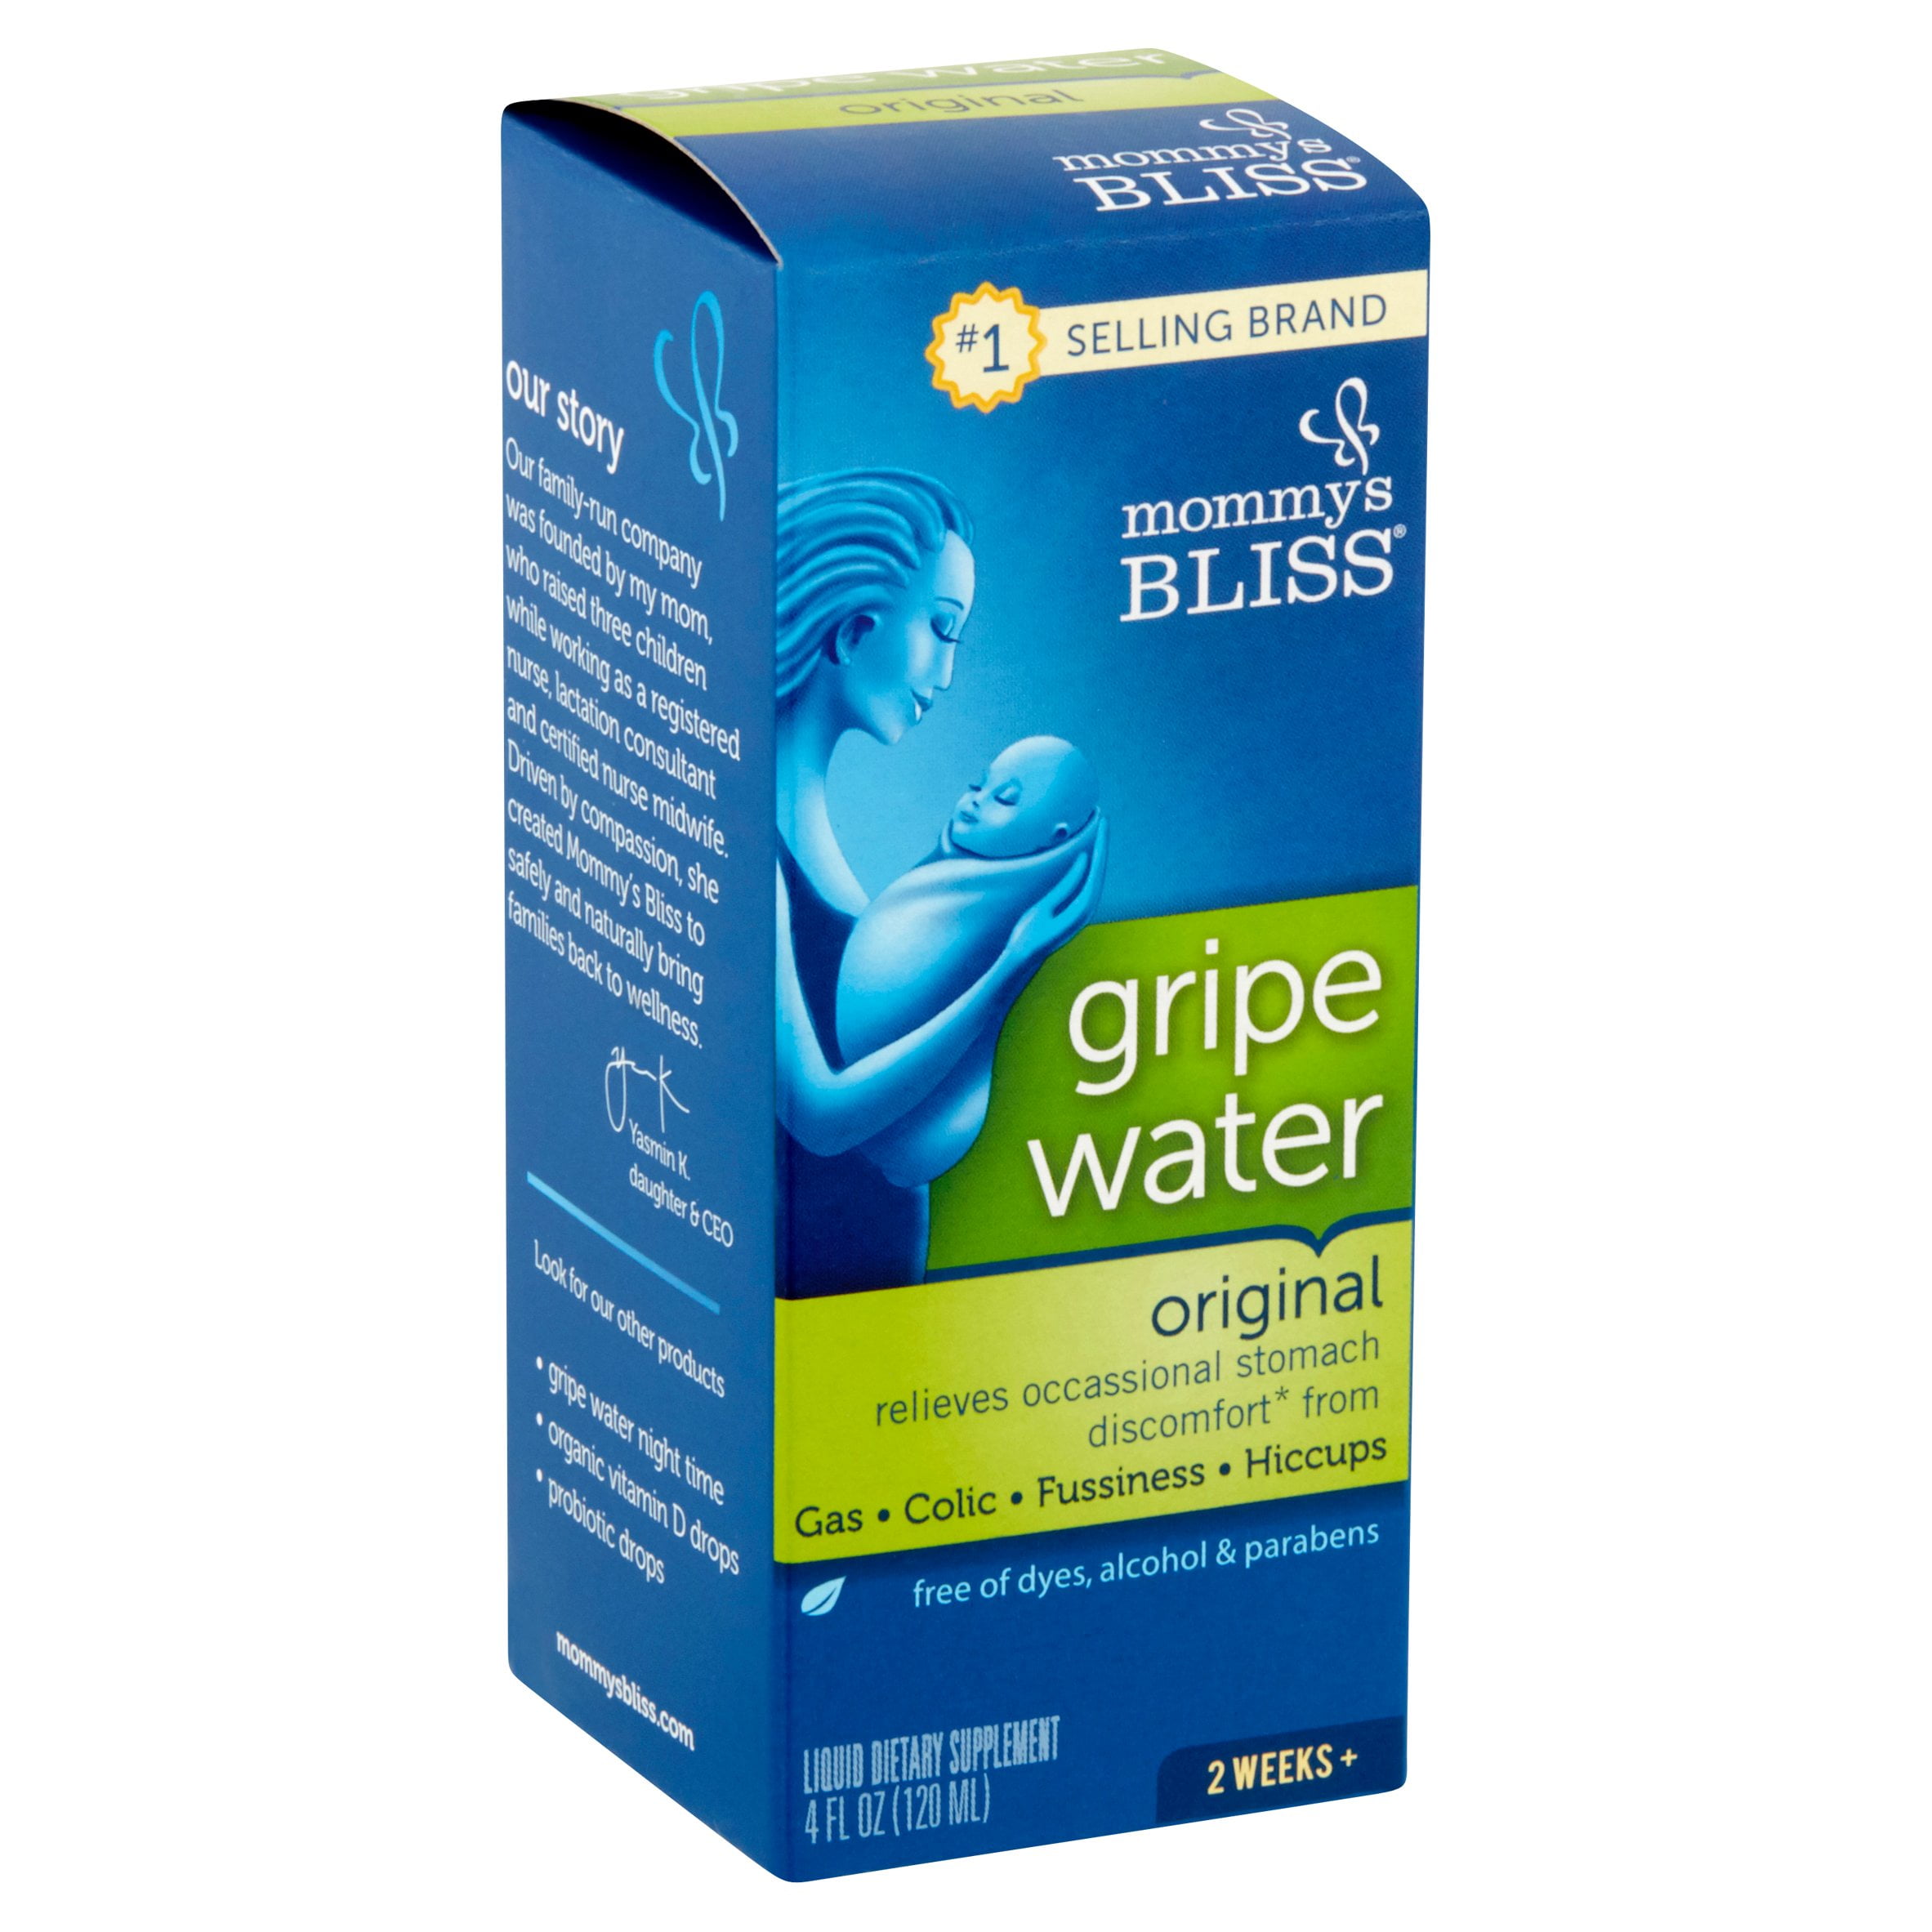 gripe water for newborns under 2 weeks